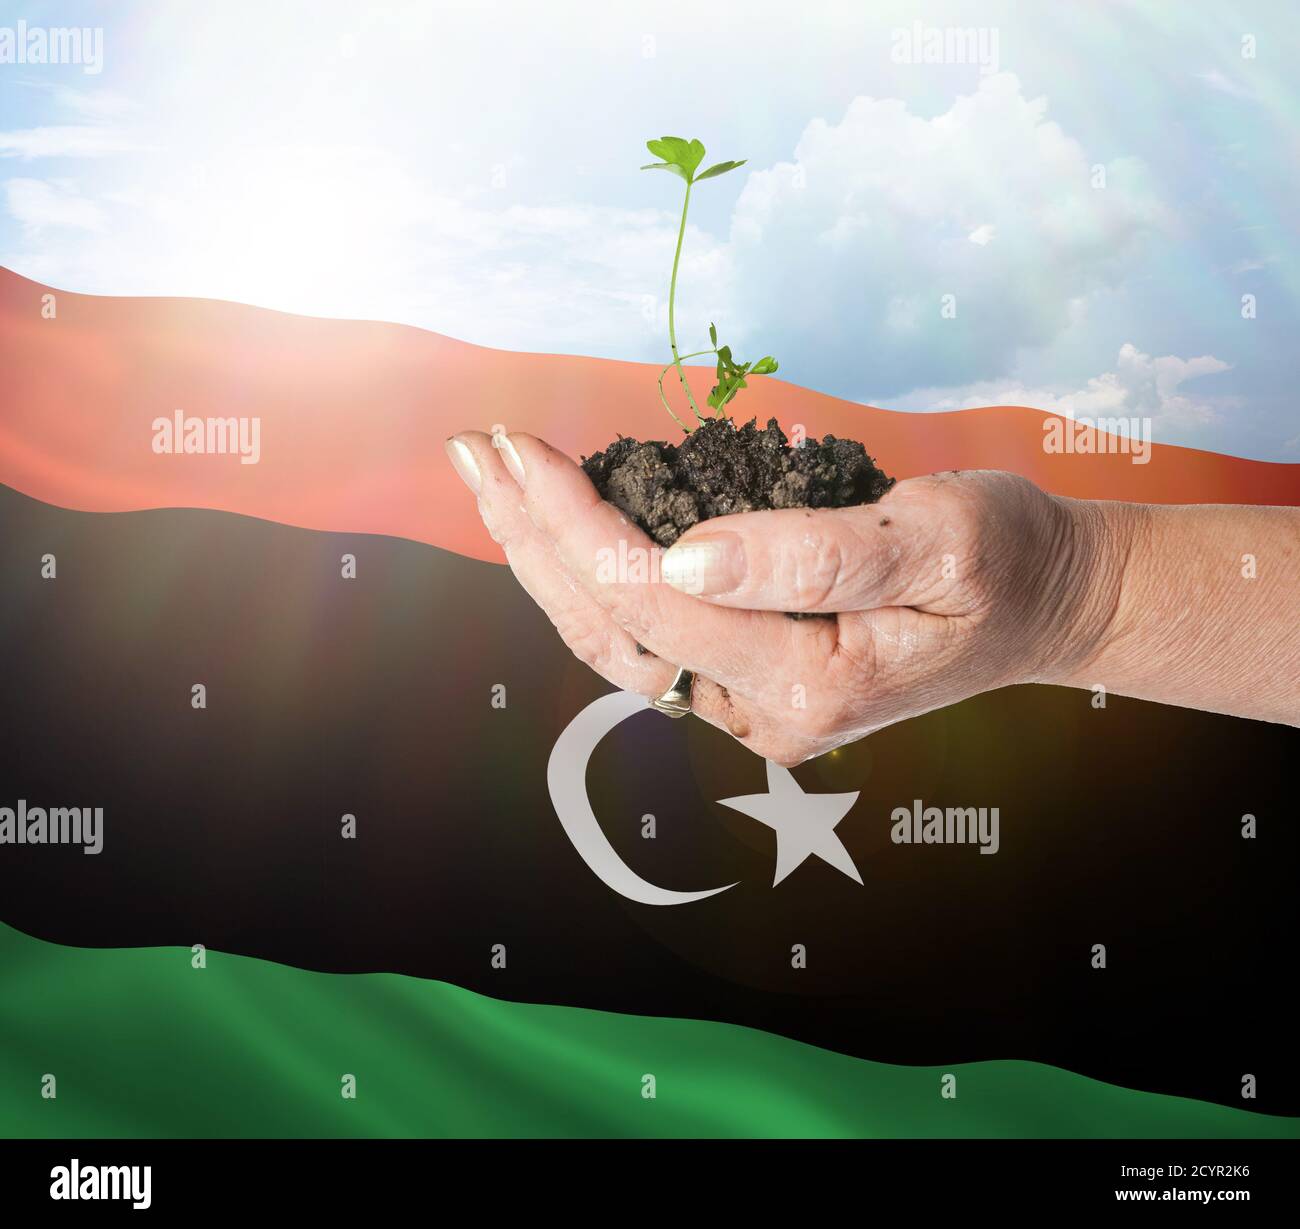 El crecimiento de Libia y el nuevo comienzo. Concepto de energía renovable verde y ecología. Mano sosteniendo planta joven. Foto de stock